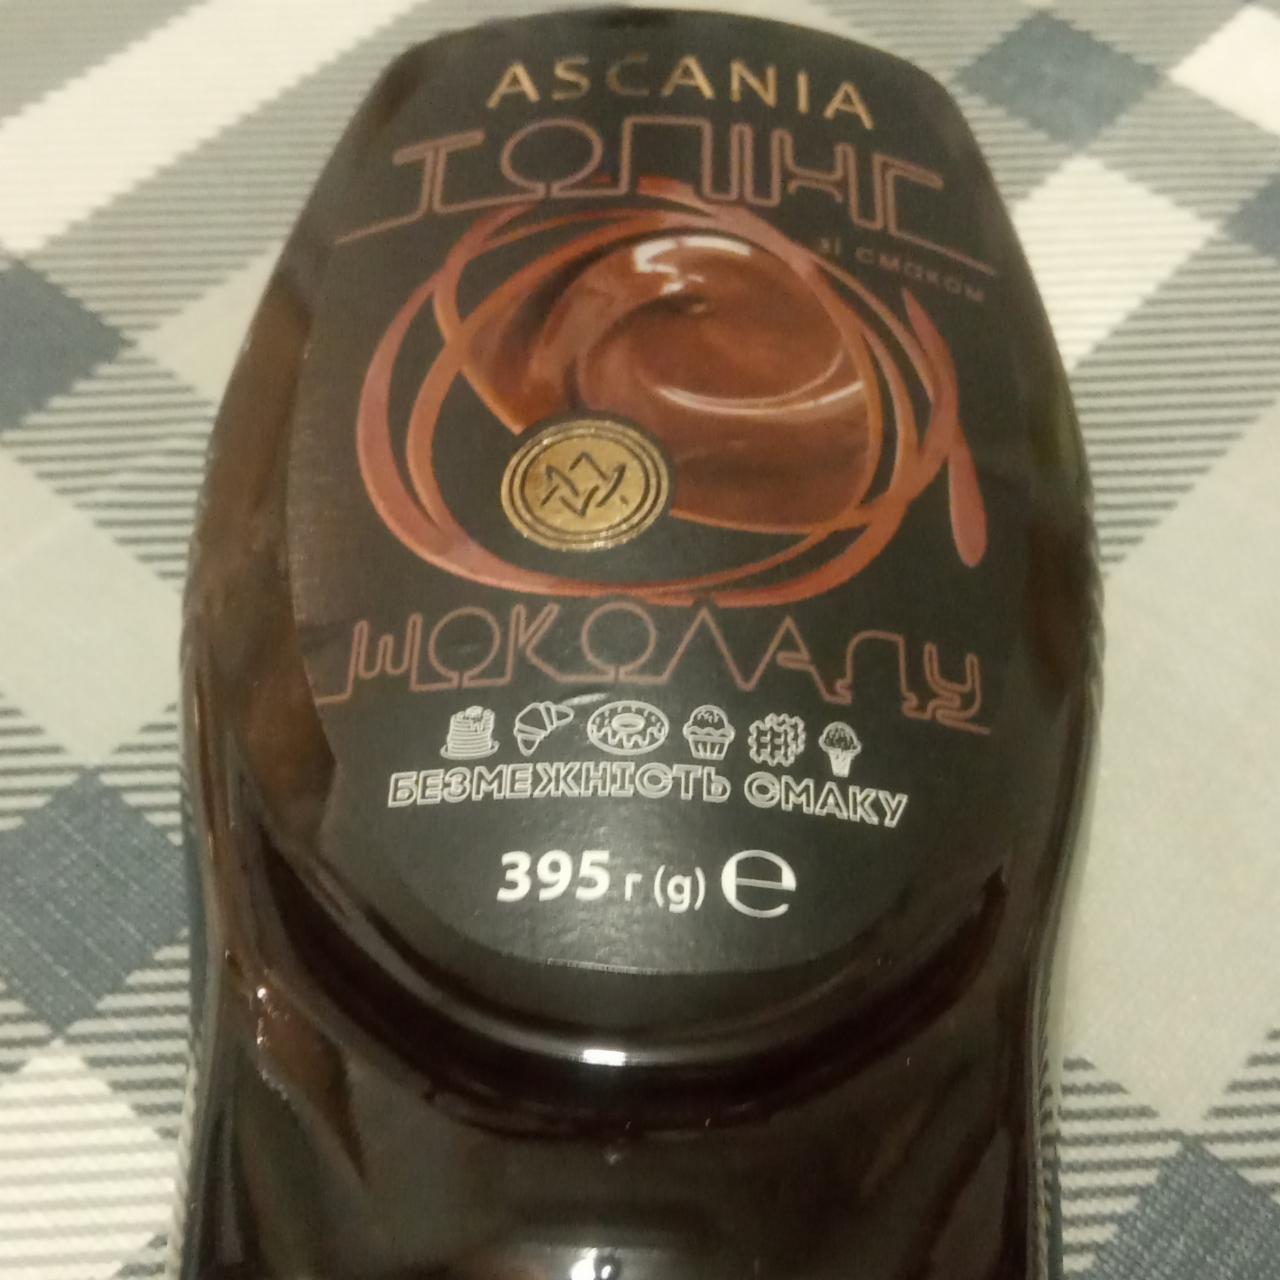 Фото - Топіг зі смаком шоколаду Ascania